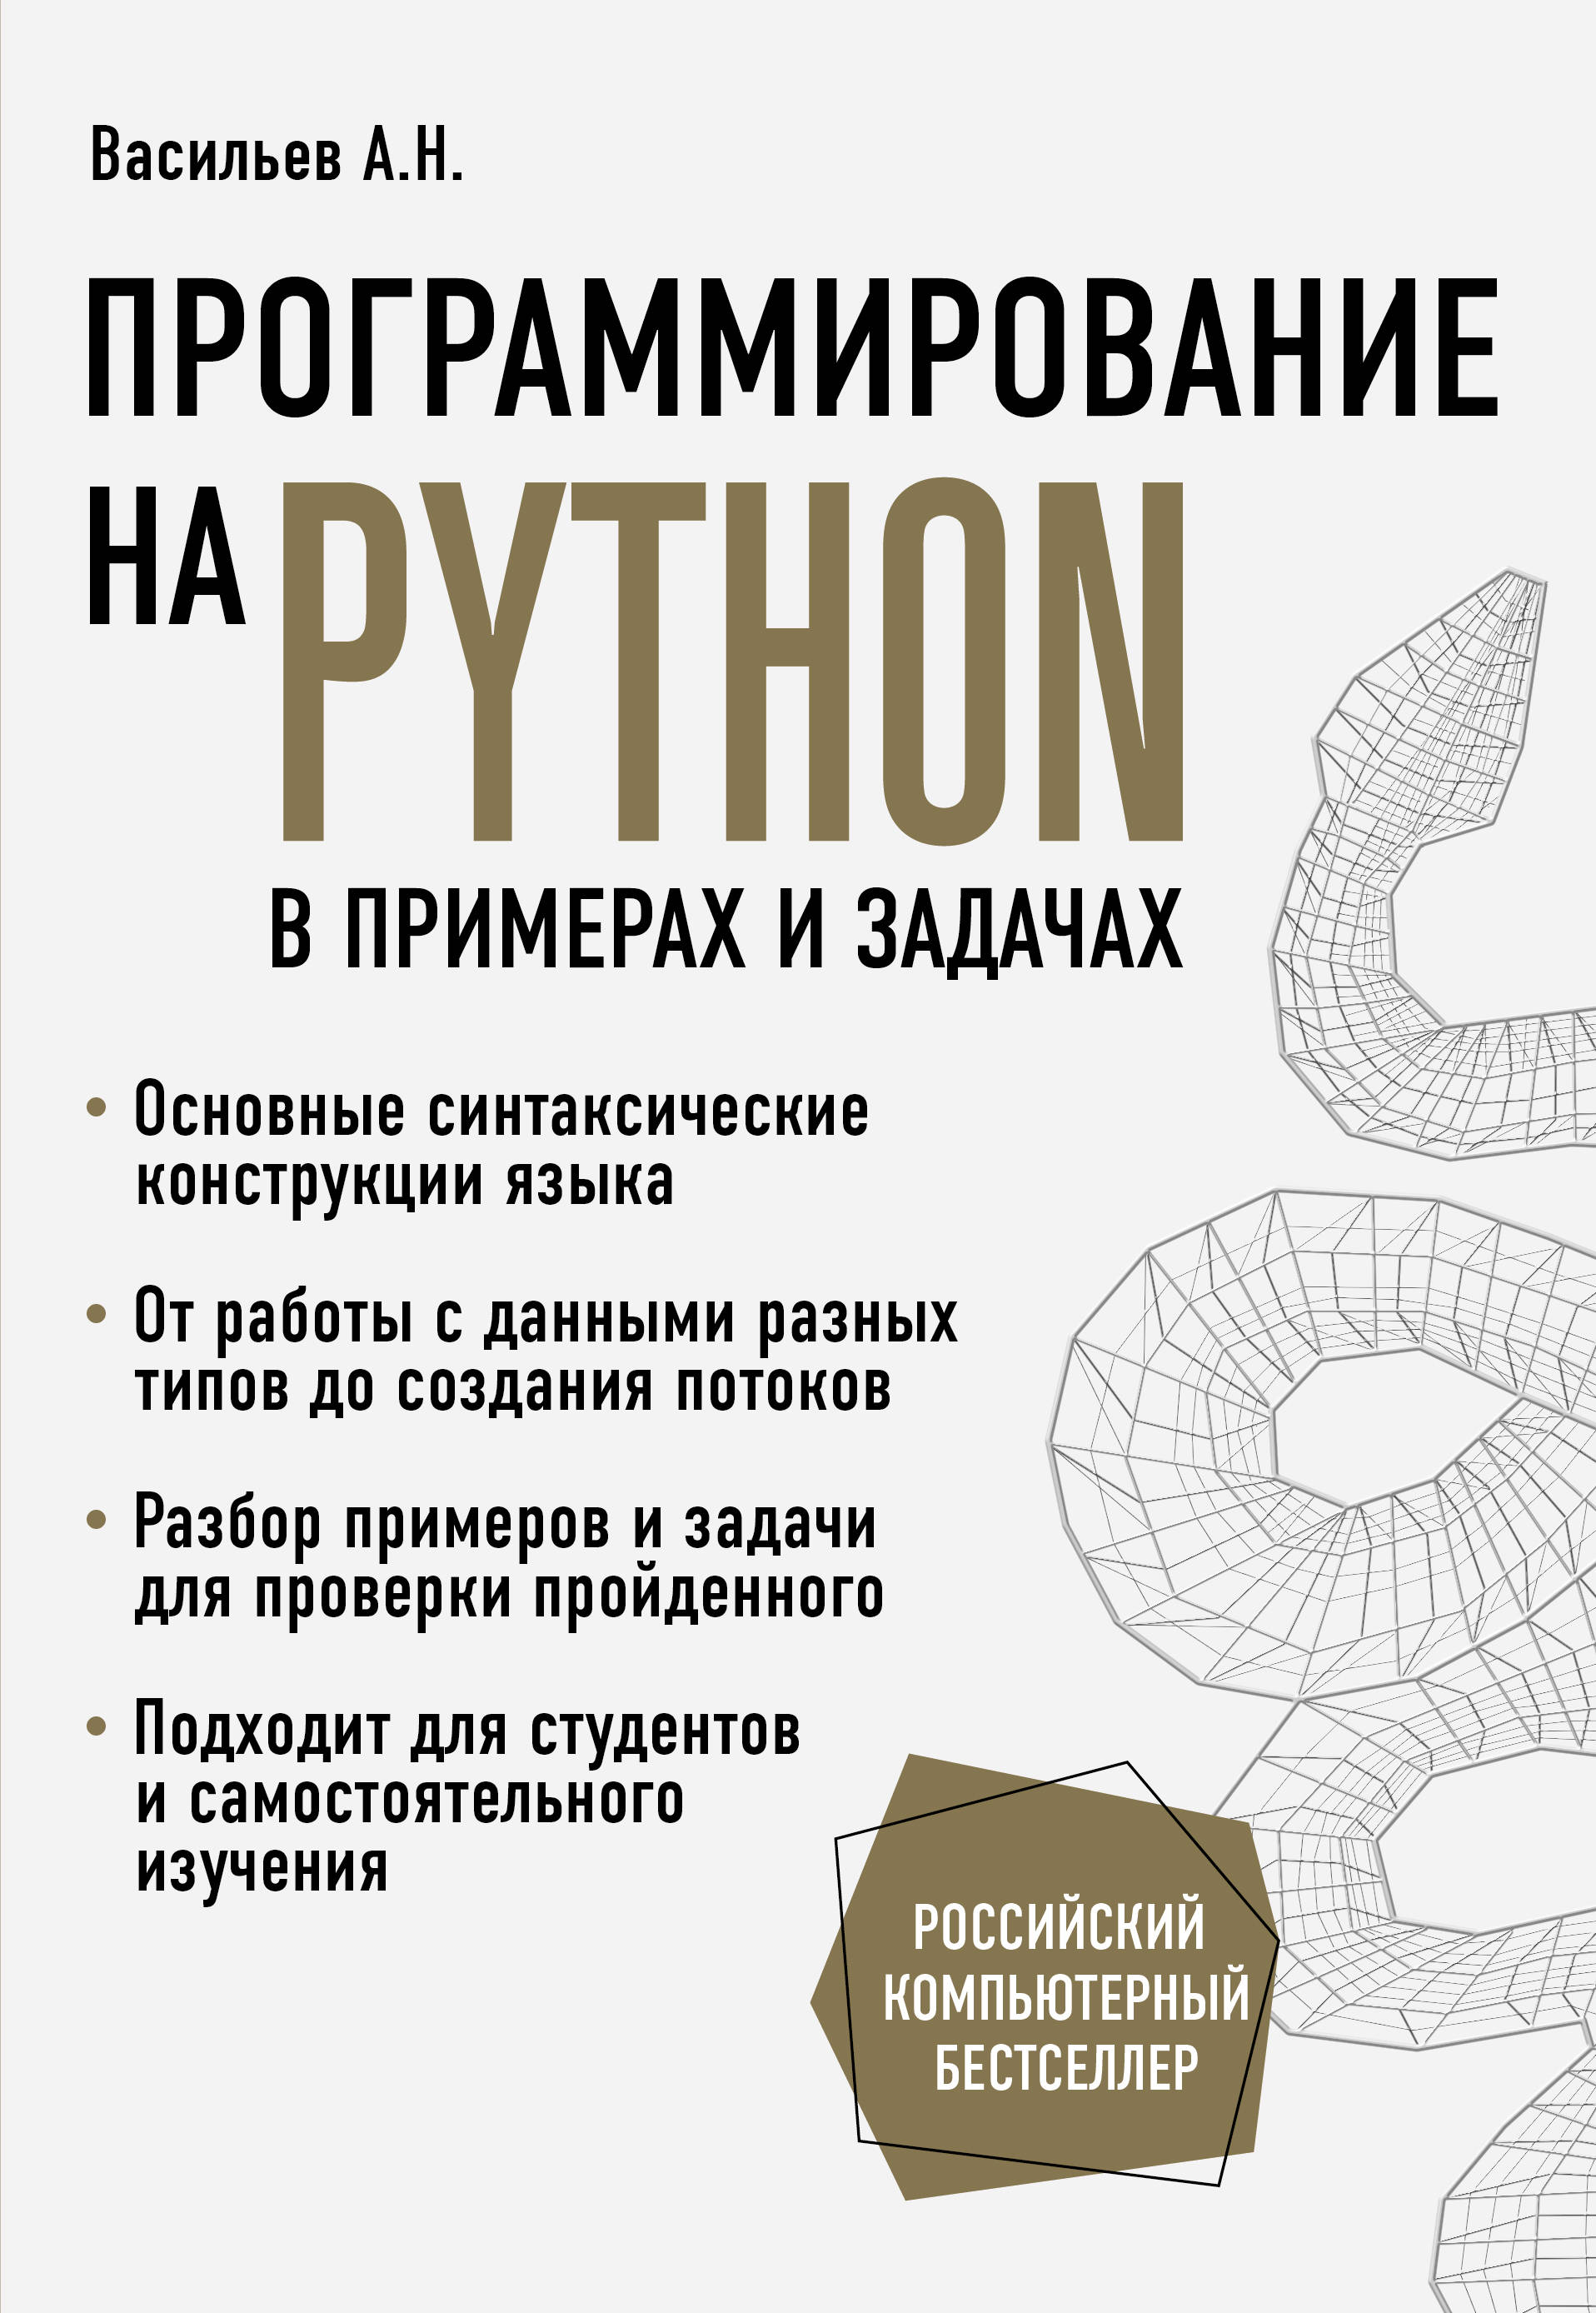 Задачи python книга. Васильев а н программирование. Программирование на Python книга. Васильев а н программирование на Python.